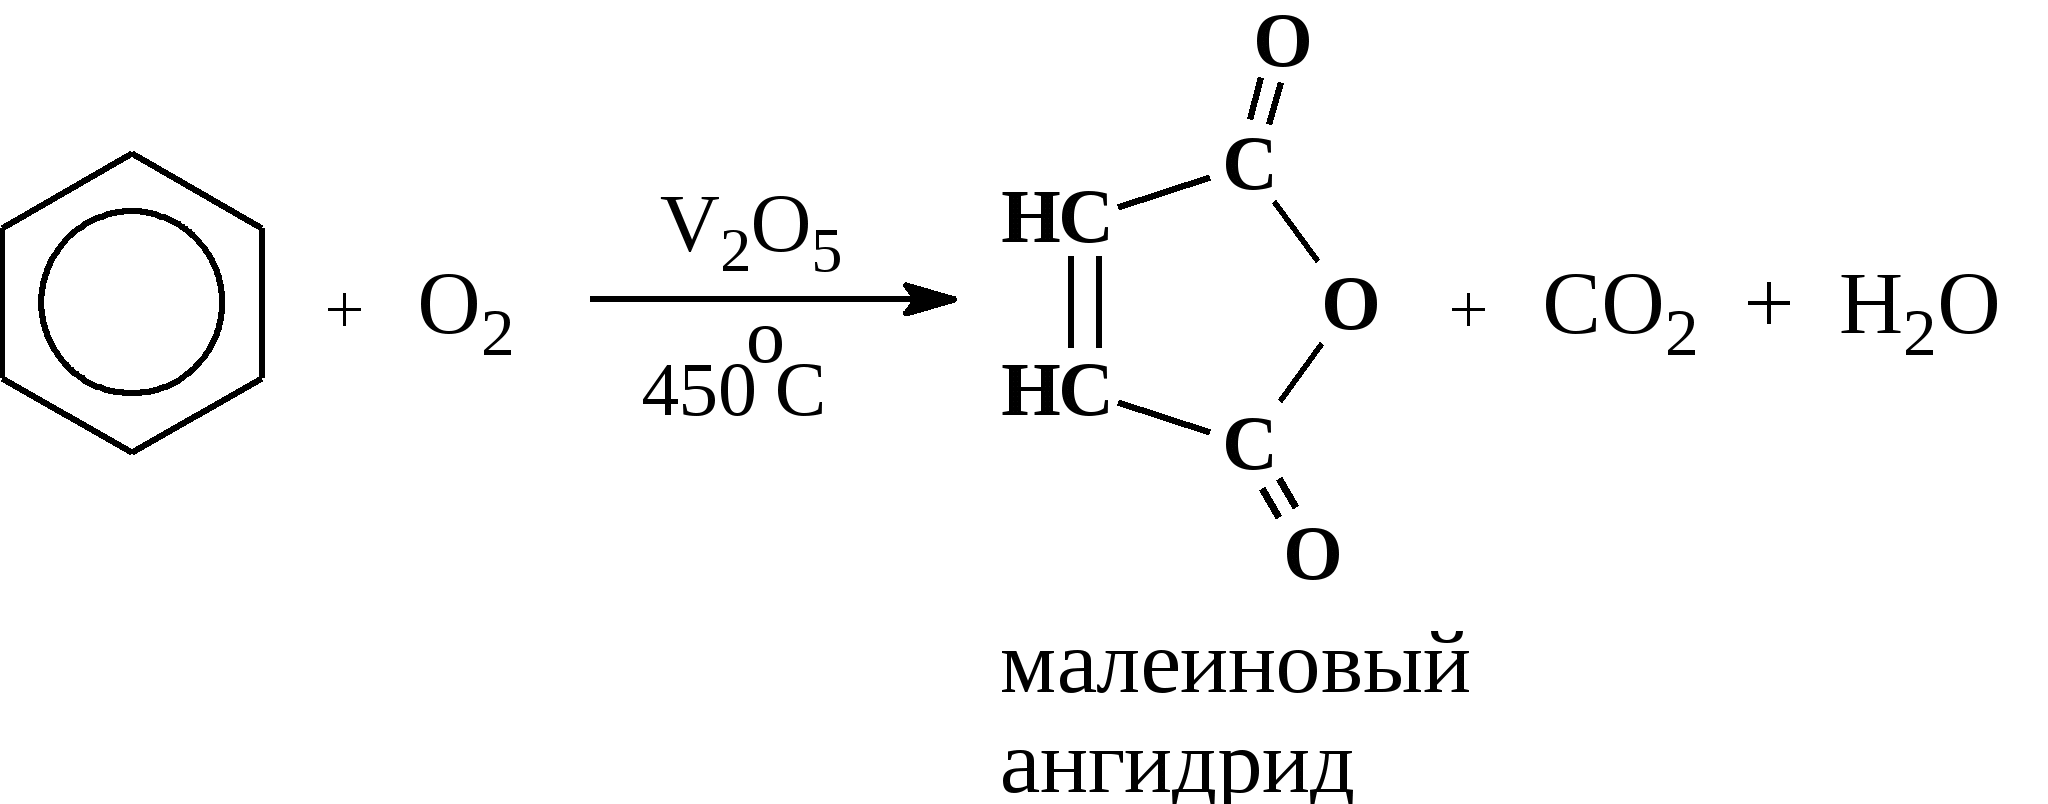 Каталитическое окисление кислородом воздуха. Каталитическое окисление бензола кислородом. Окисление бензола v2o5. Окисление бензола кислородом при катализаторе v2o5. Каталитическое окисление метилбензола.